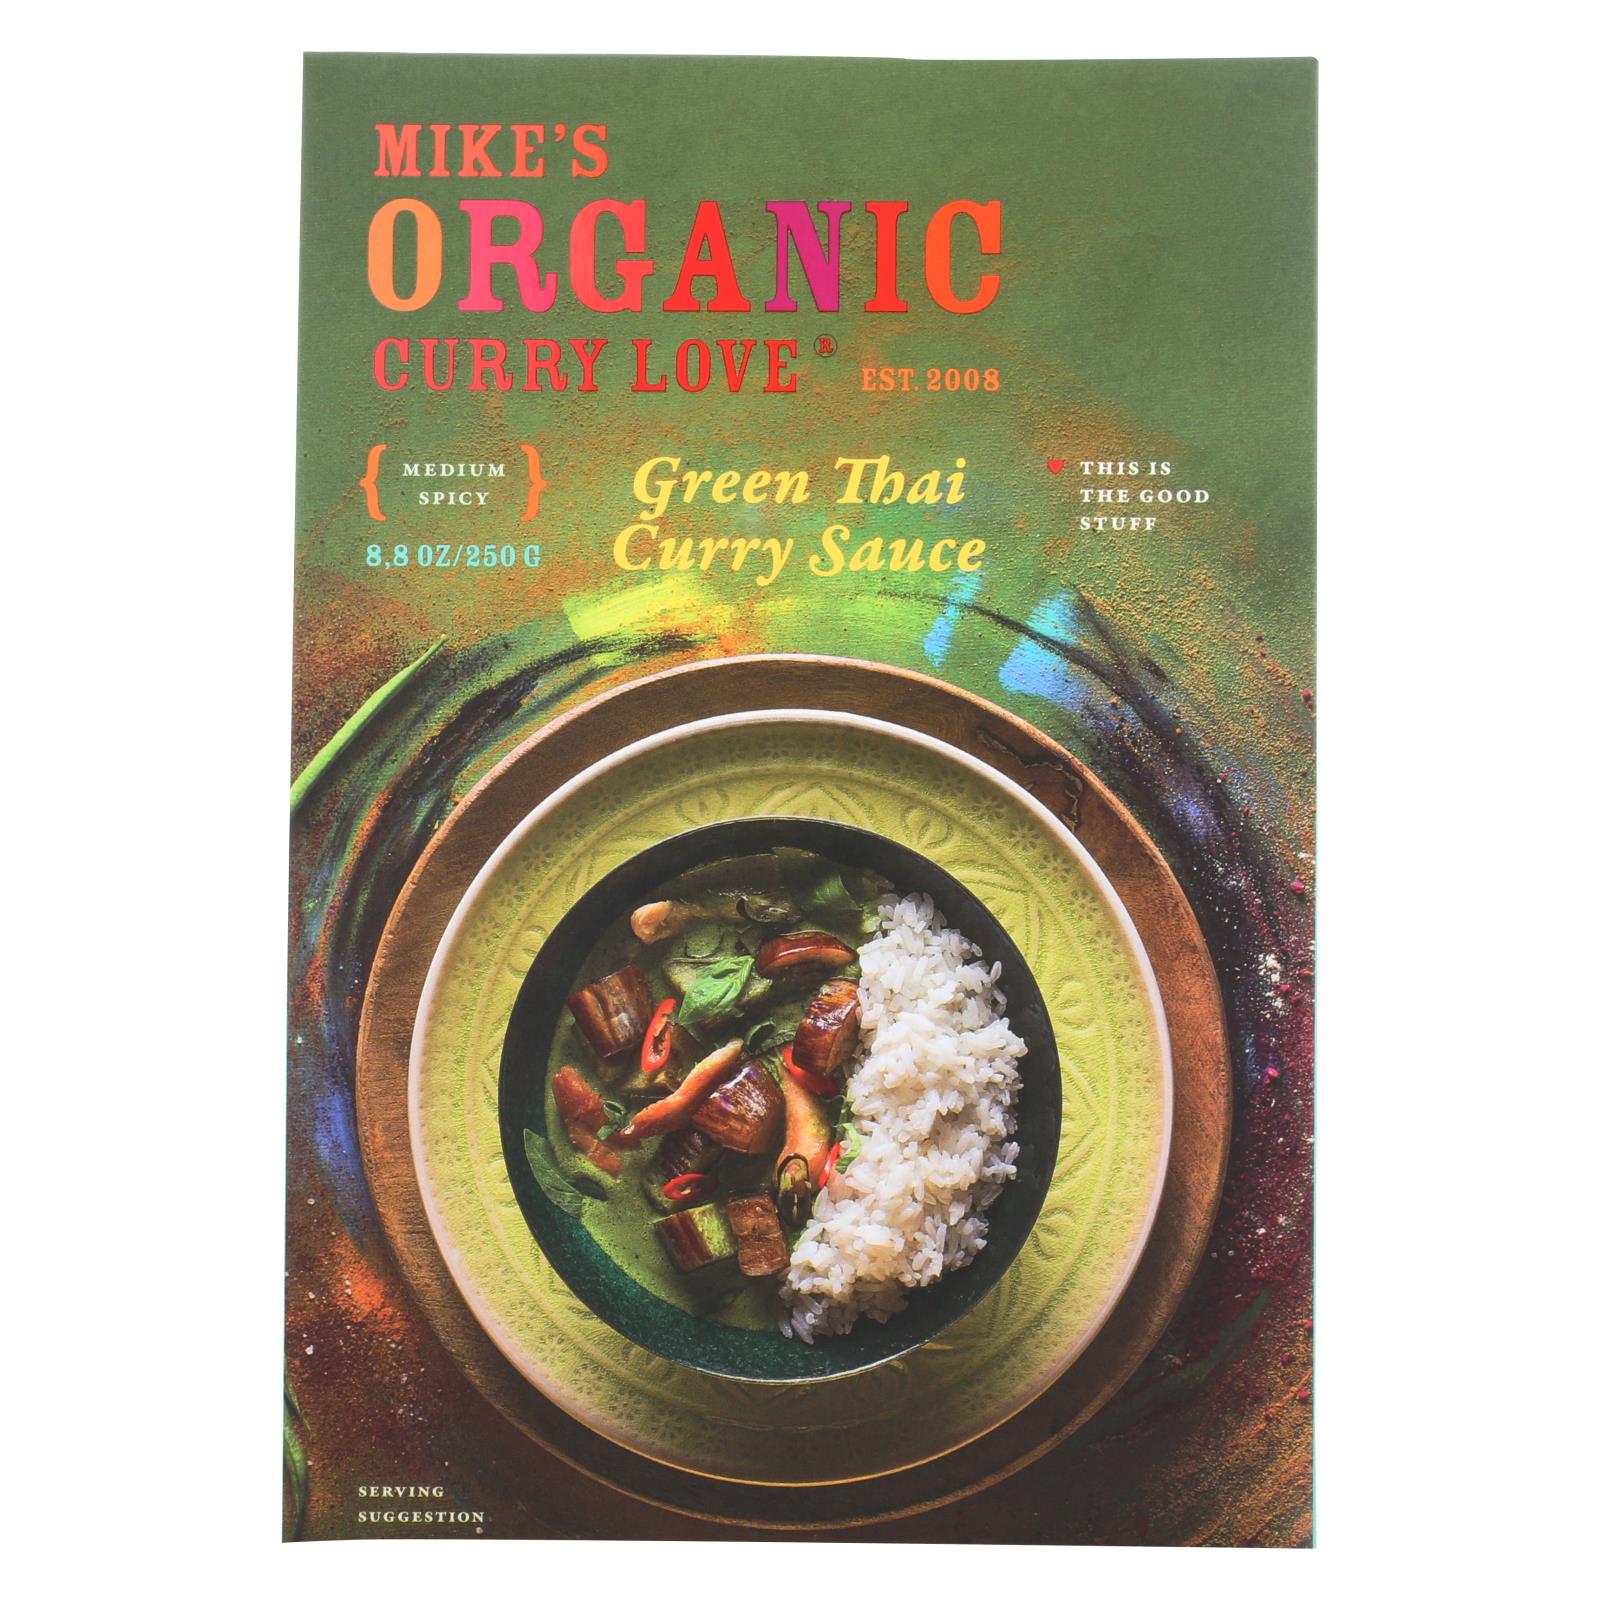 Mike's Organic Curry Love - Organic Curry Simmer Sauce - Green Thai - 6개 묶음상품 - 8.8 fl oz.